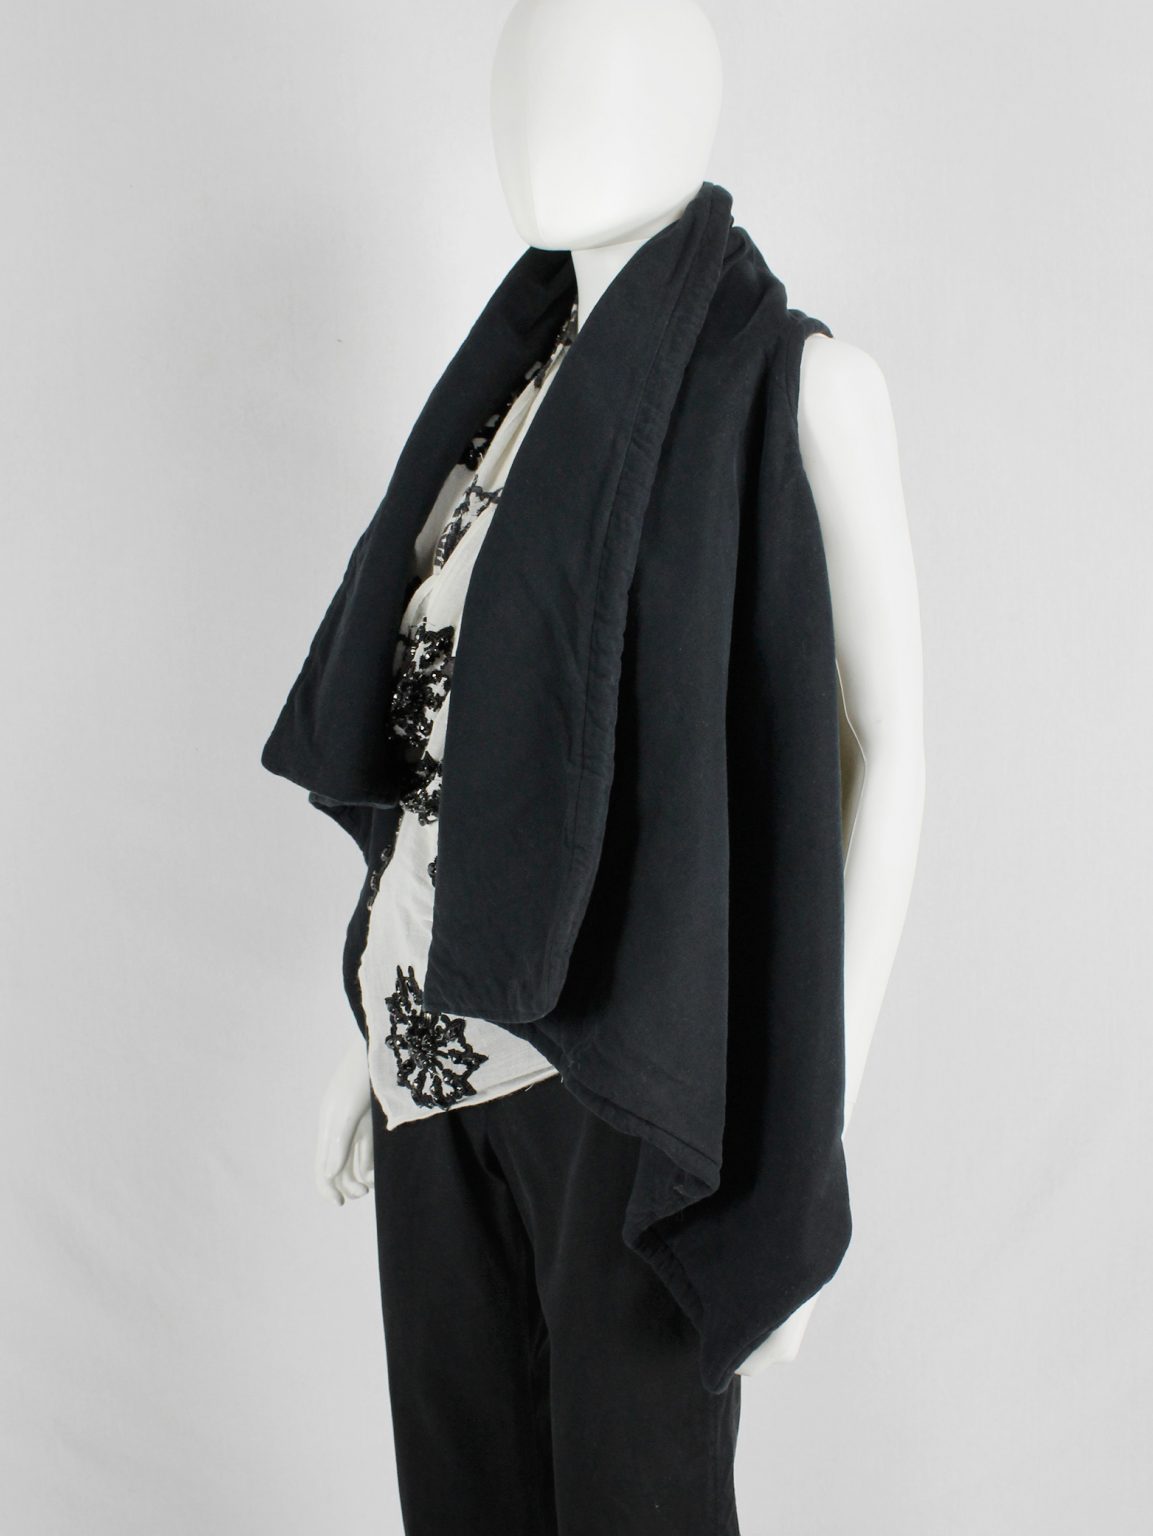 Ann Demeulemeester black padded waistcoat with asymmetric drape